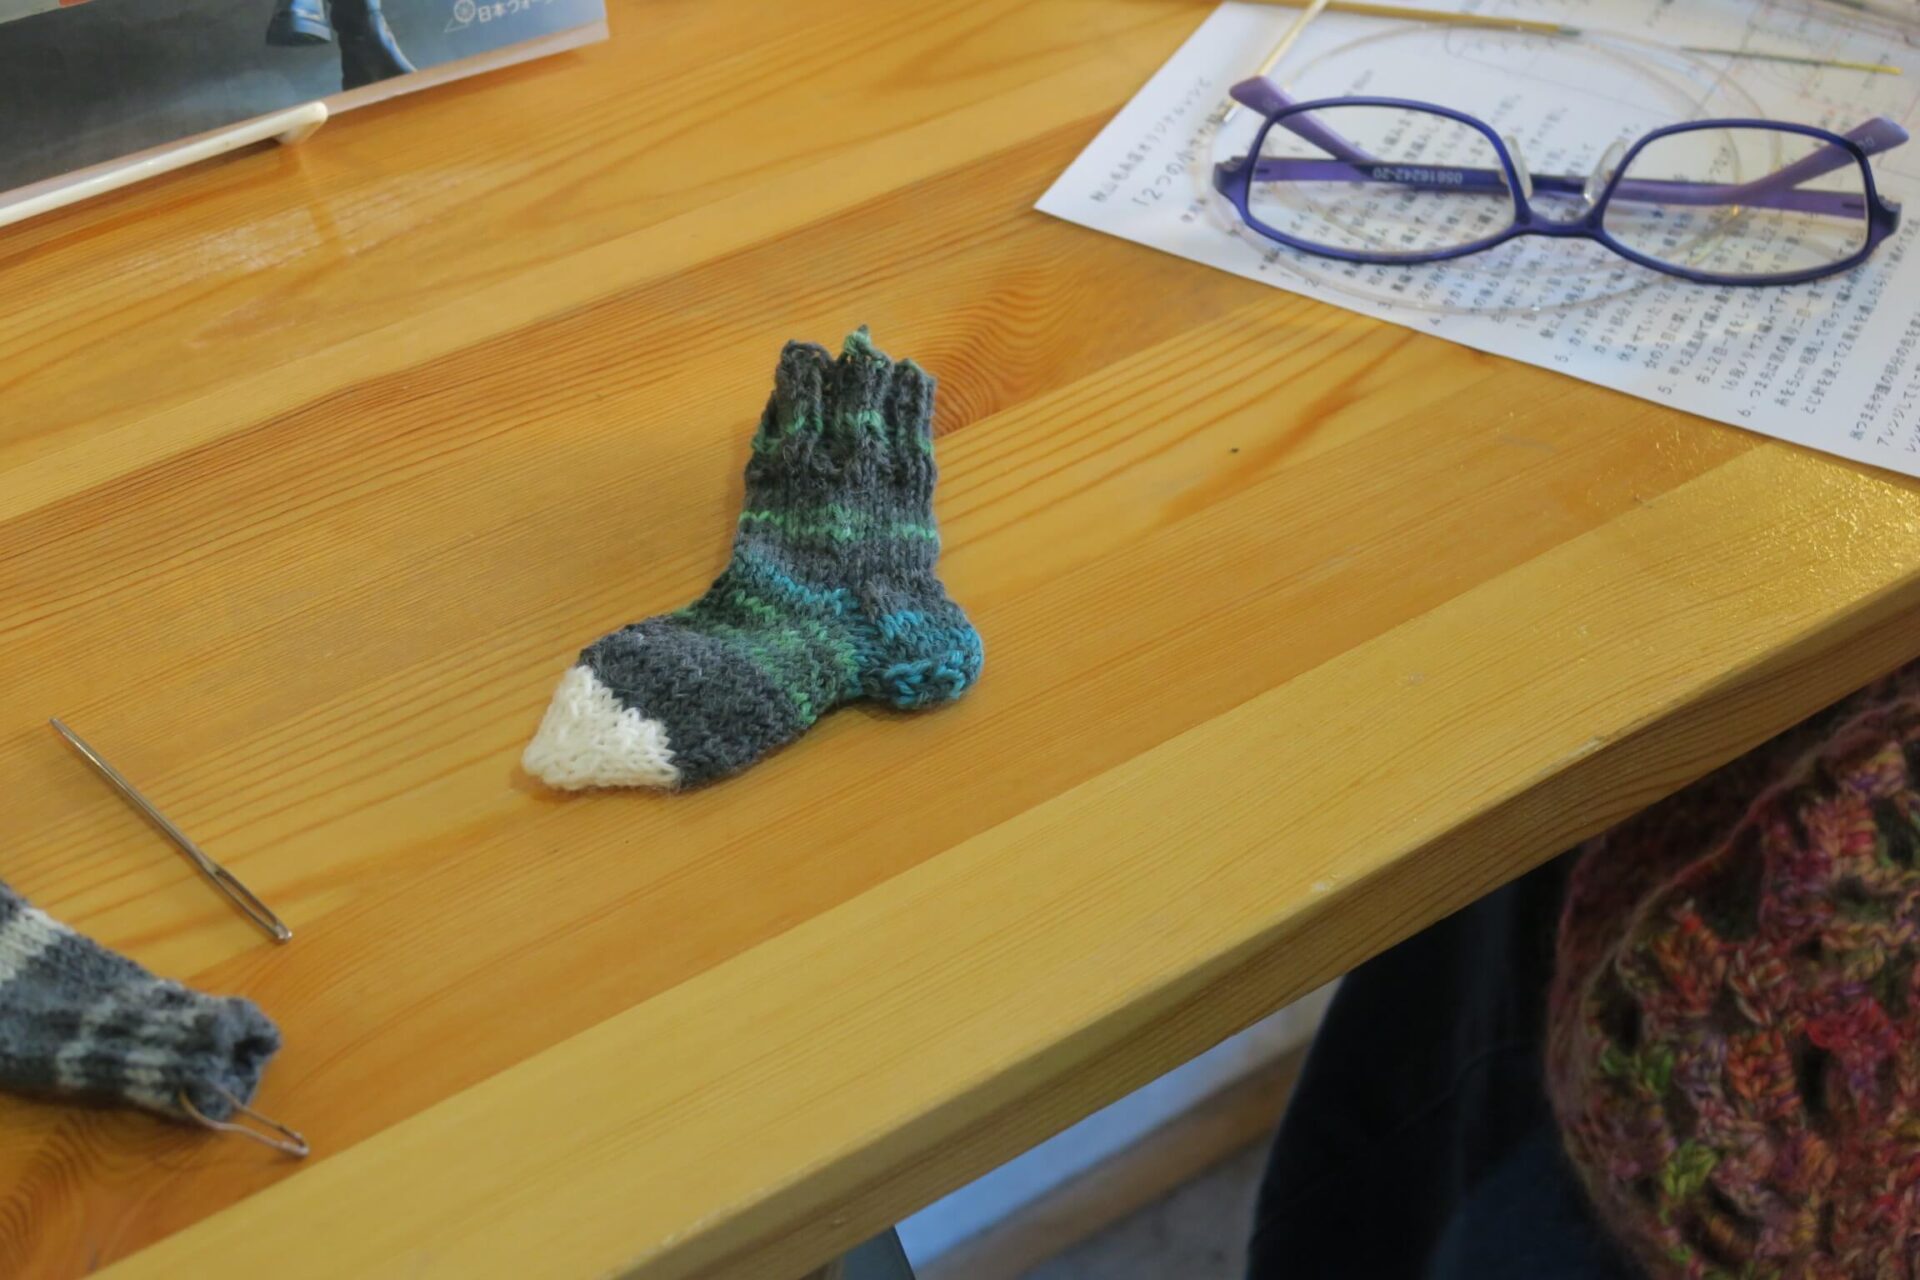 【イベント終了】秋山毛糸店12月のケイトマミレ「ミニ靴下を編みましょう」